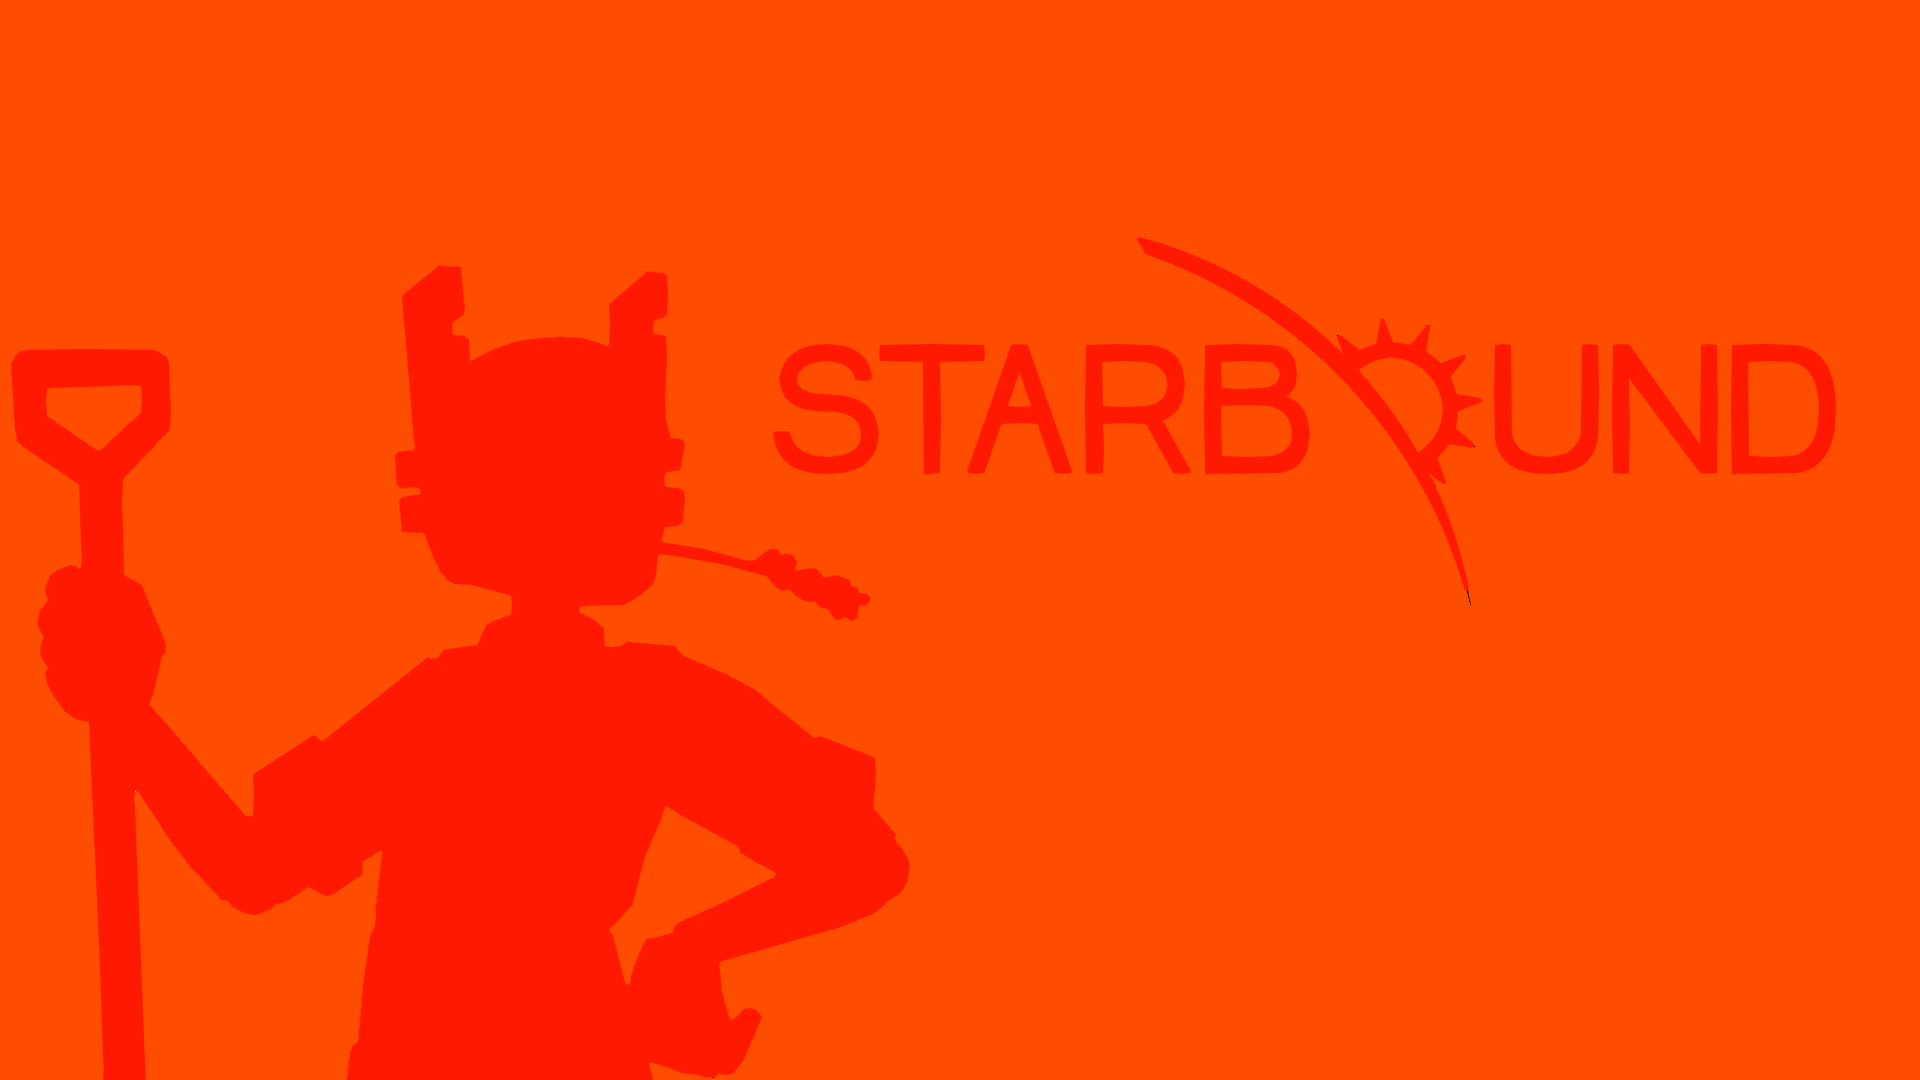 Starbound Minimalism Orange Background 1920x1080